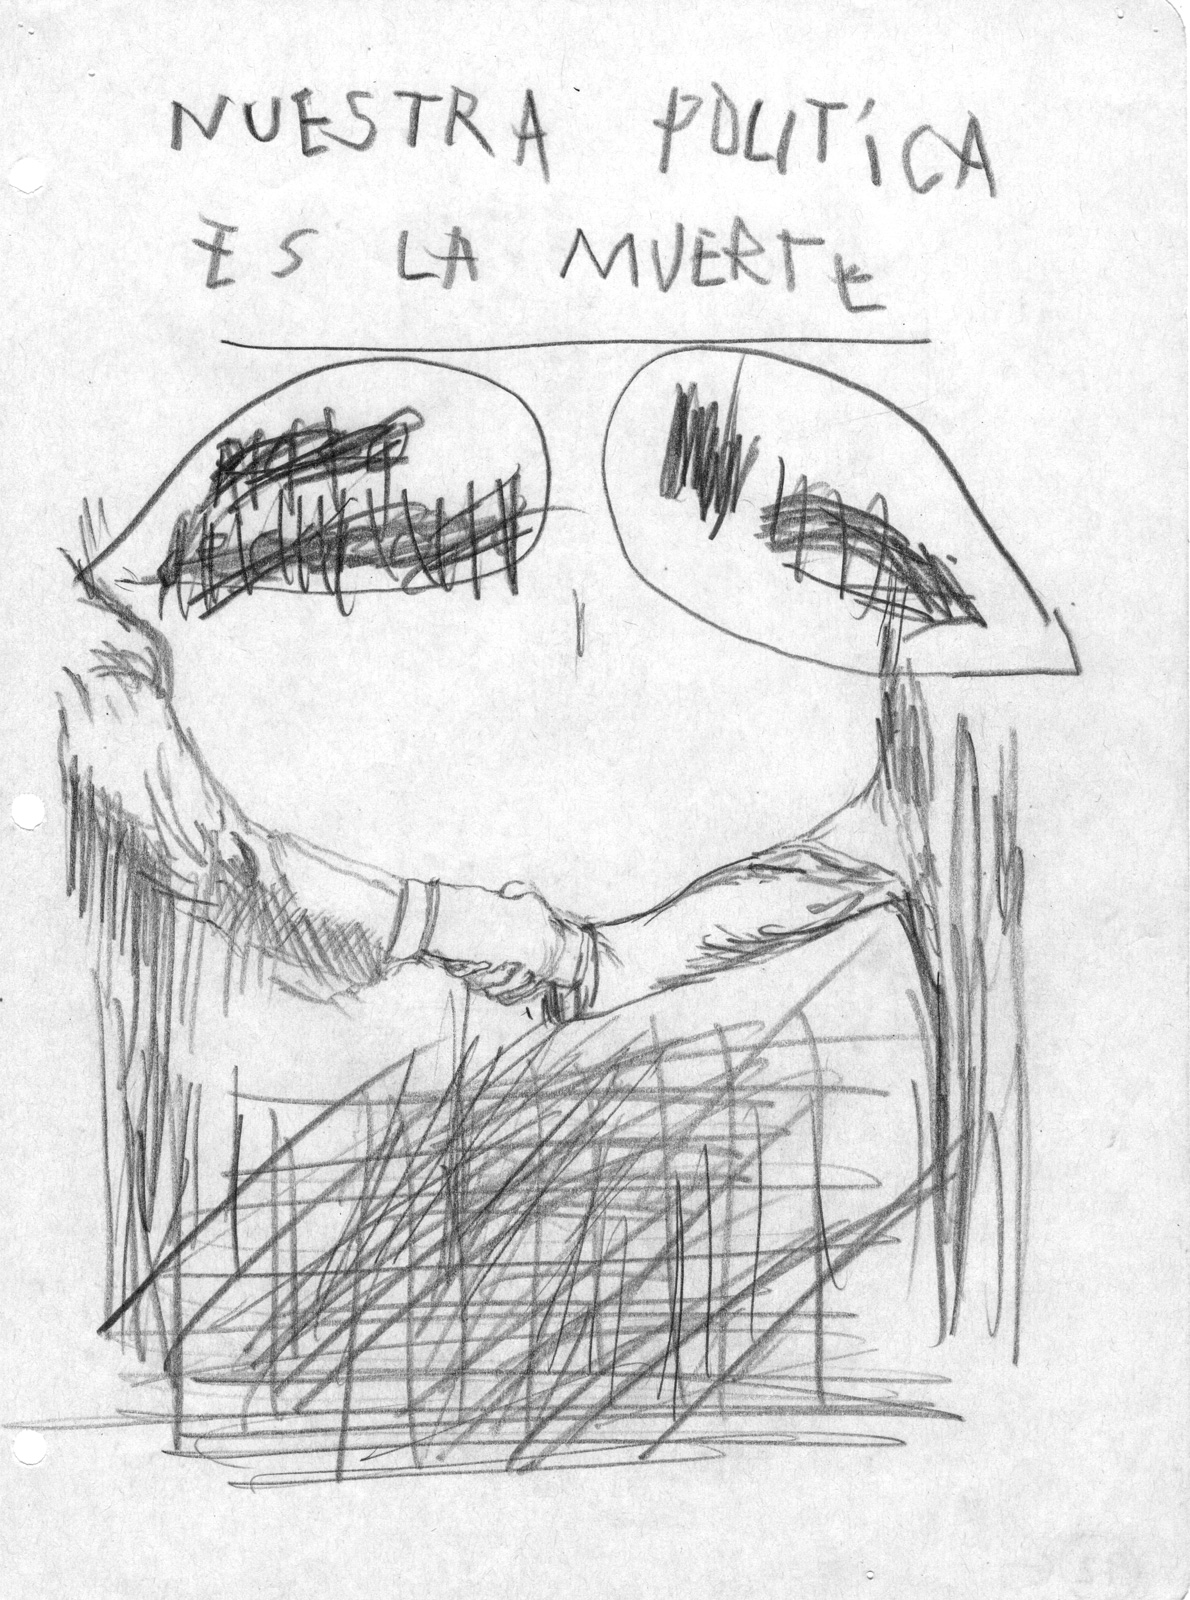 Daniel Guzmán, “Nuestra política es la muerte”, de la serie *Carne negra*, 1994 